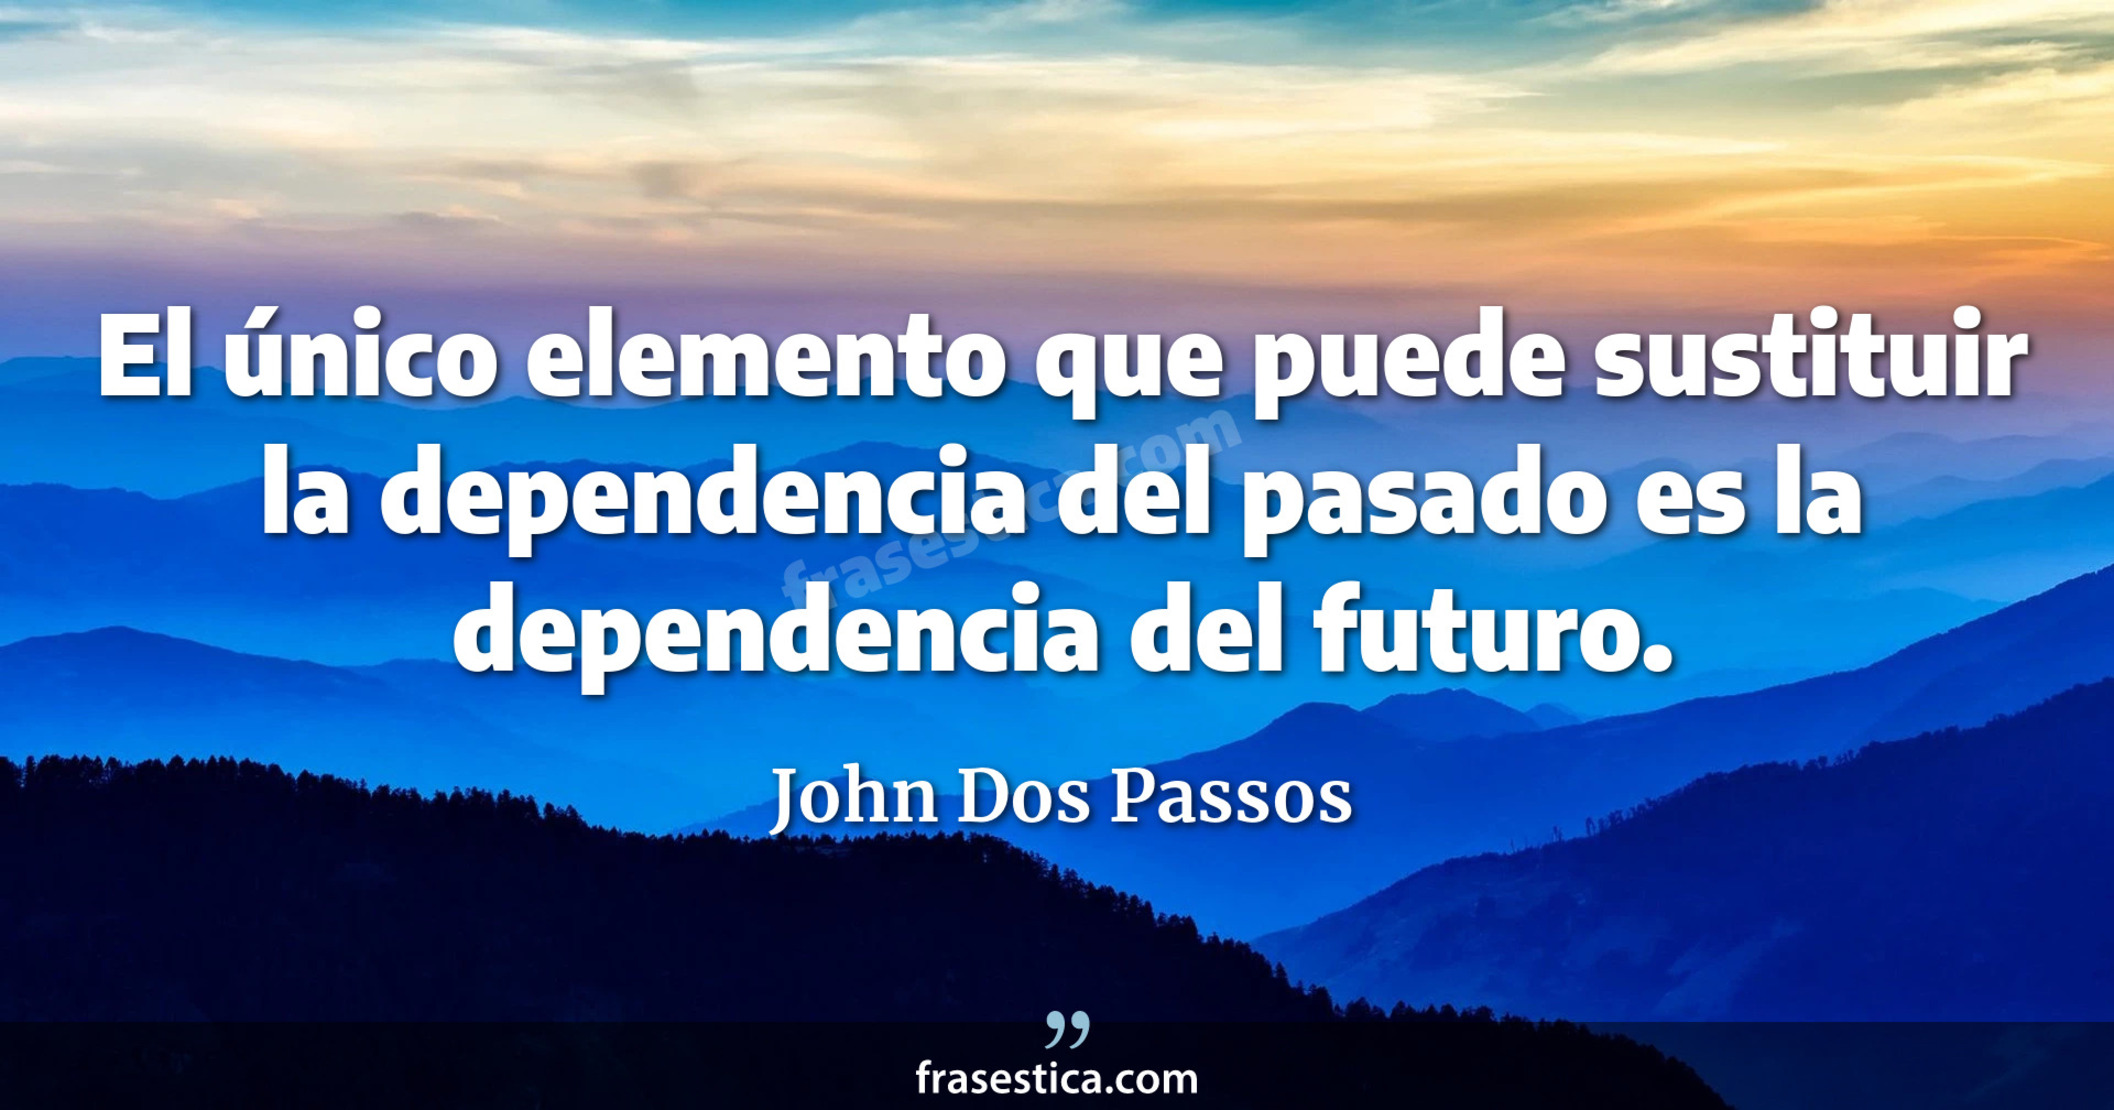 El único elemento que puede sustituir la dependencia del pasado es la dependencia del futuro. - John Dos Passos